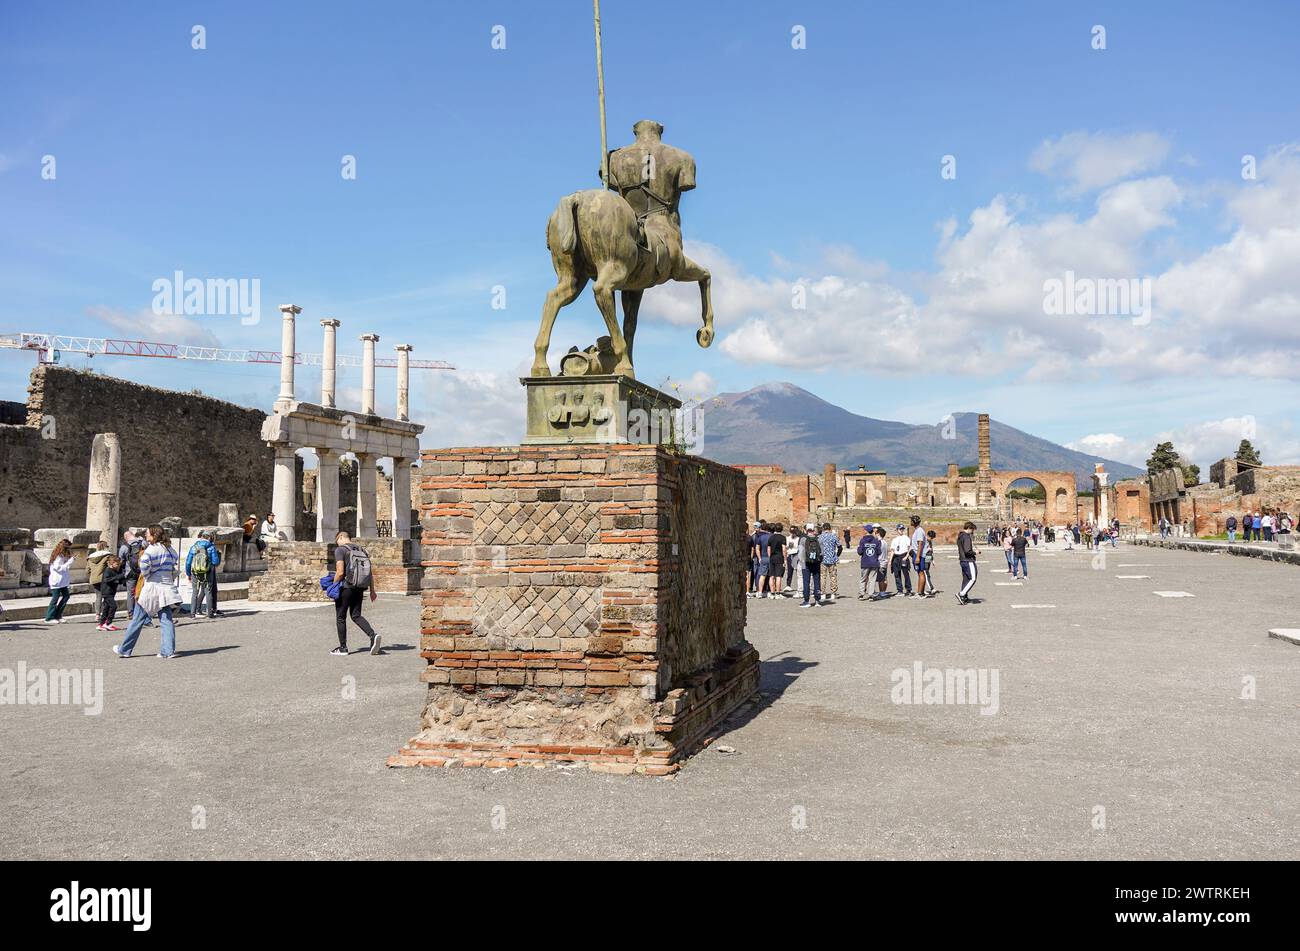 Plaza del Foro de Pompeya, centro de la vida en la antigua Pompeya, con el volcán Vesubio en el fondo, Nápoles, Italia Foto de stock